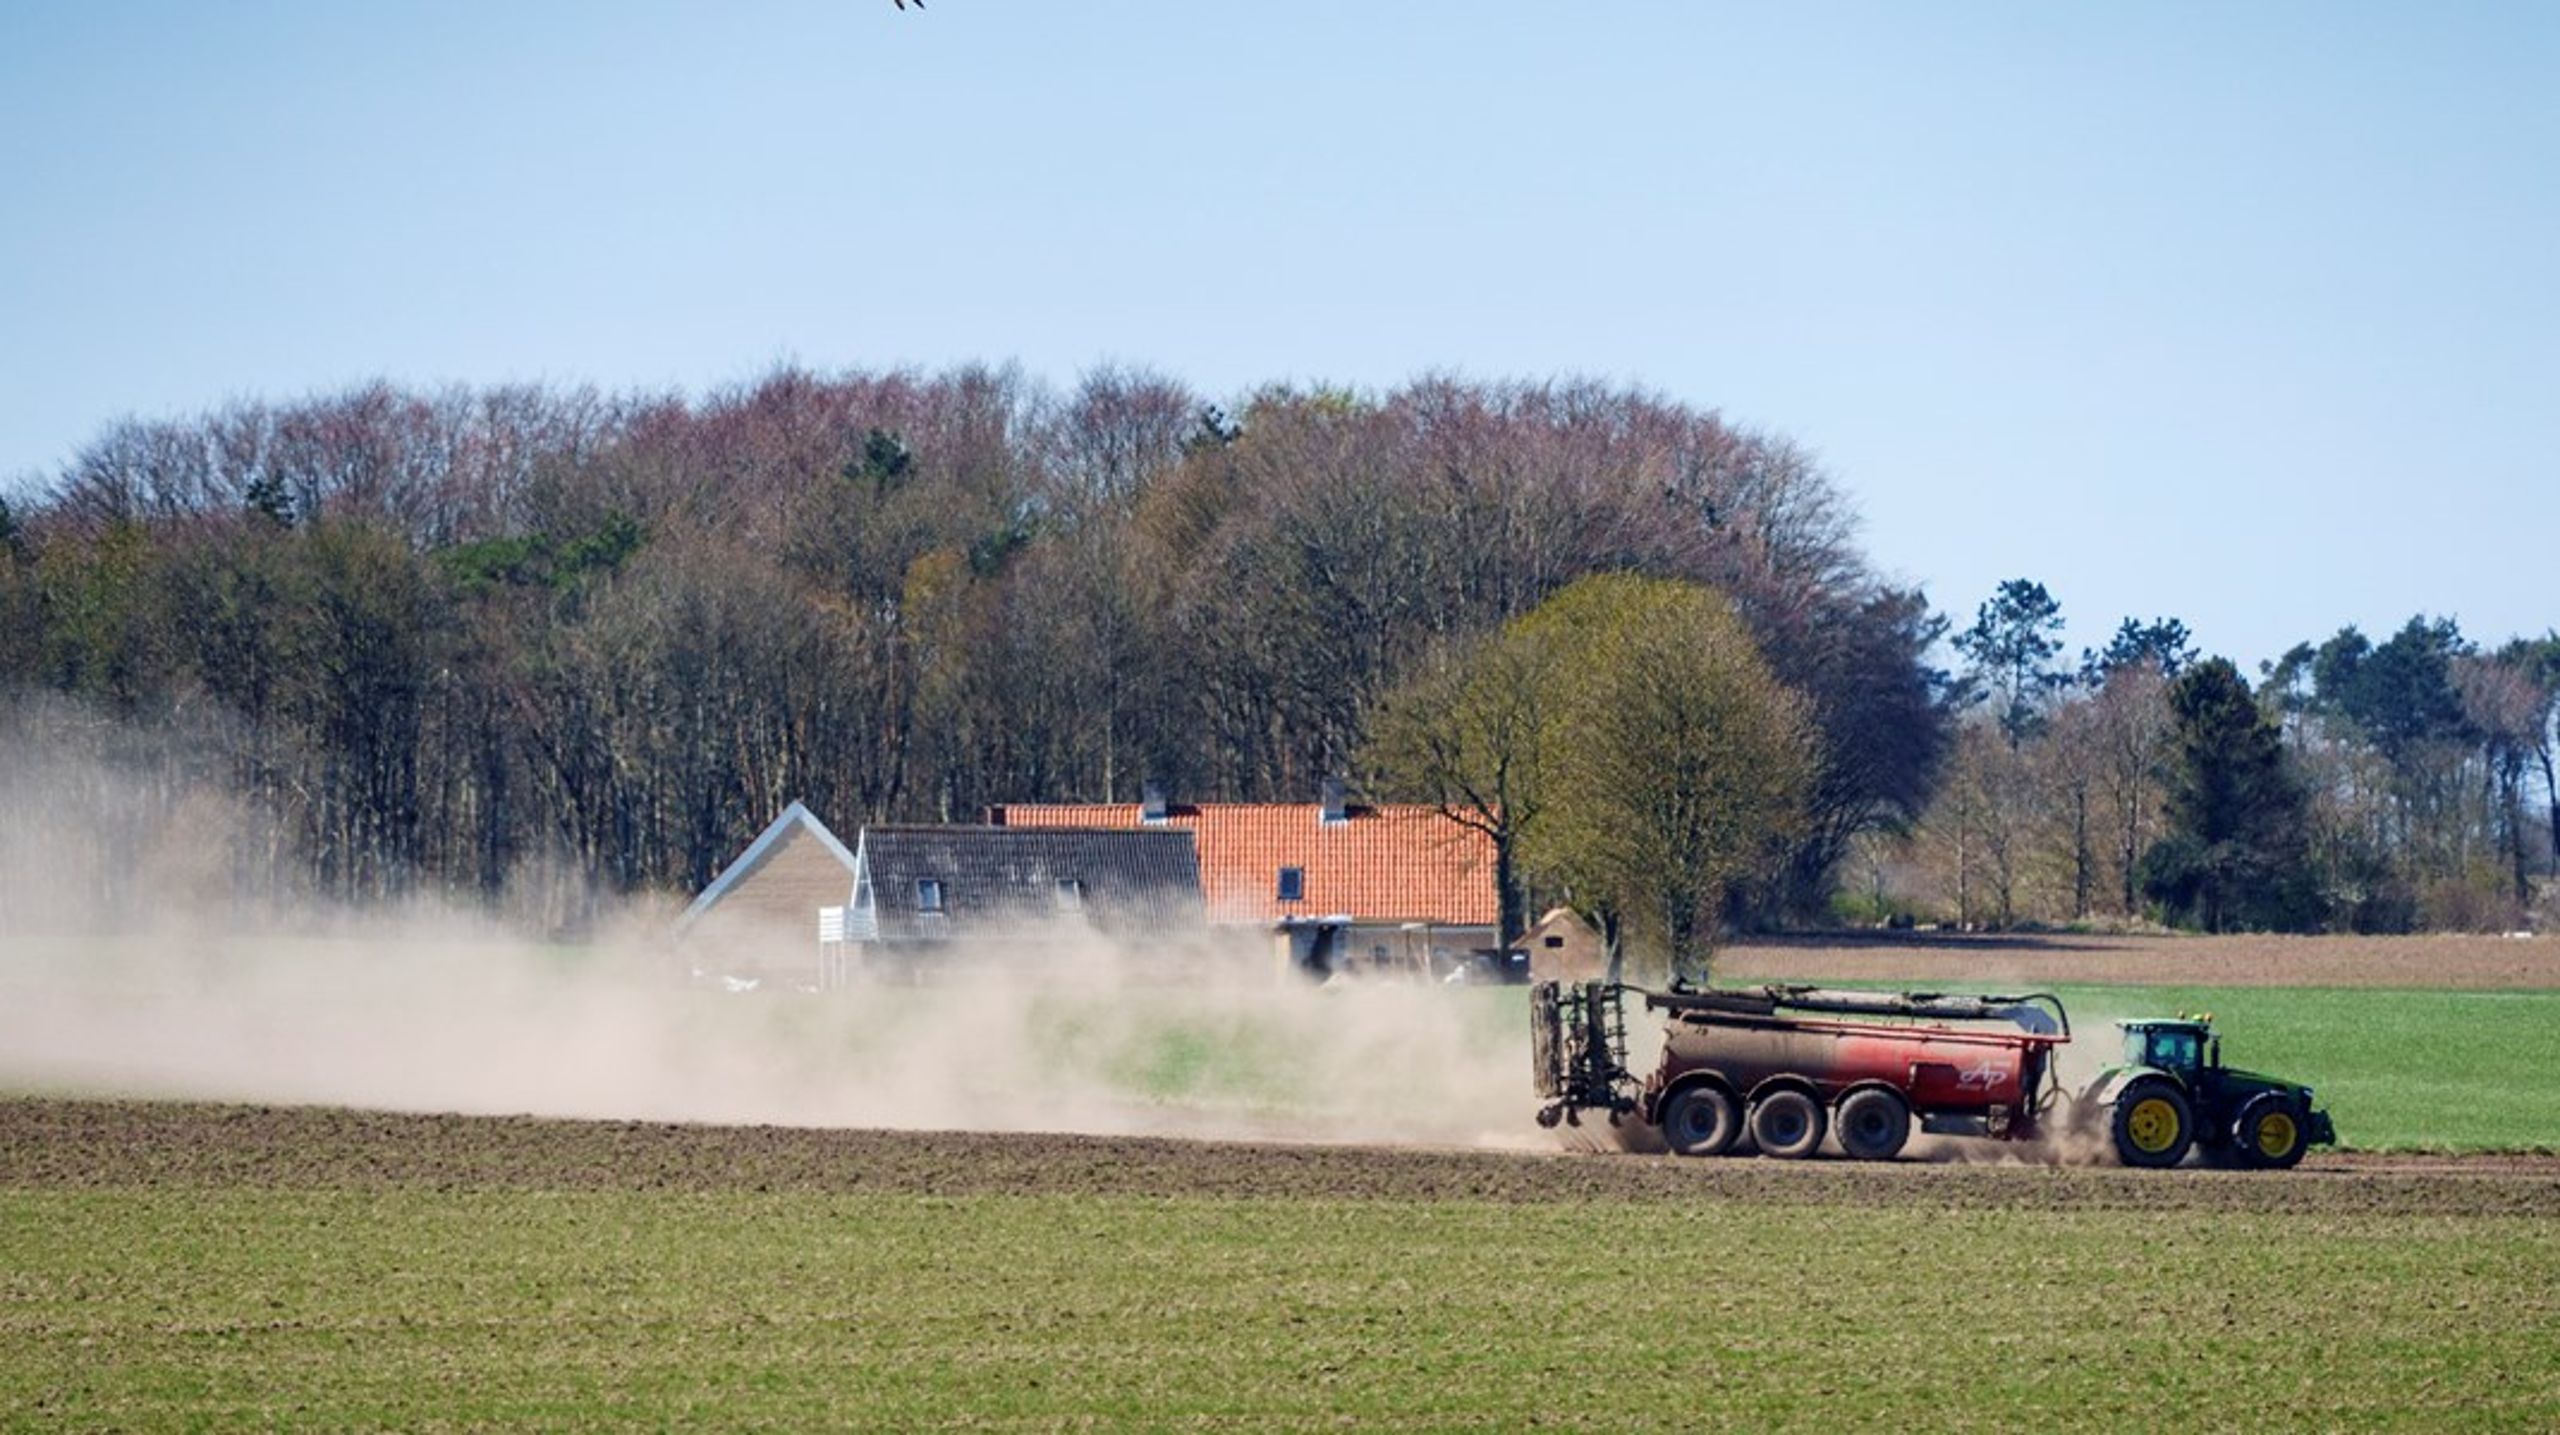 Derfor bør politikerne snarest ophæve landbrugsindustriens særstatus for brug af PFAS, skriver Søren Wium-Andersen.<br>